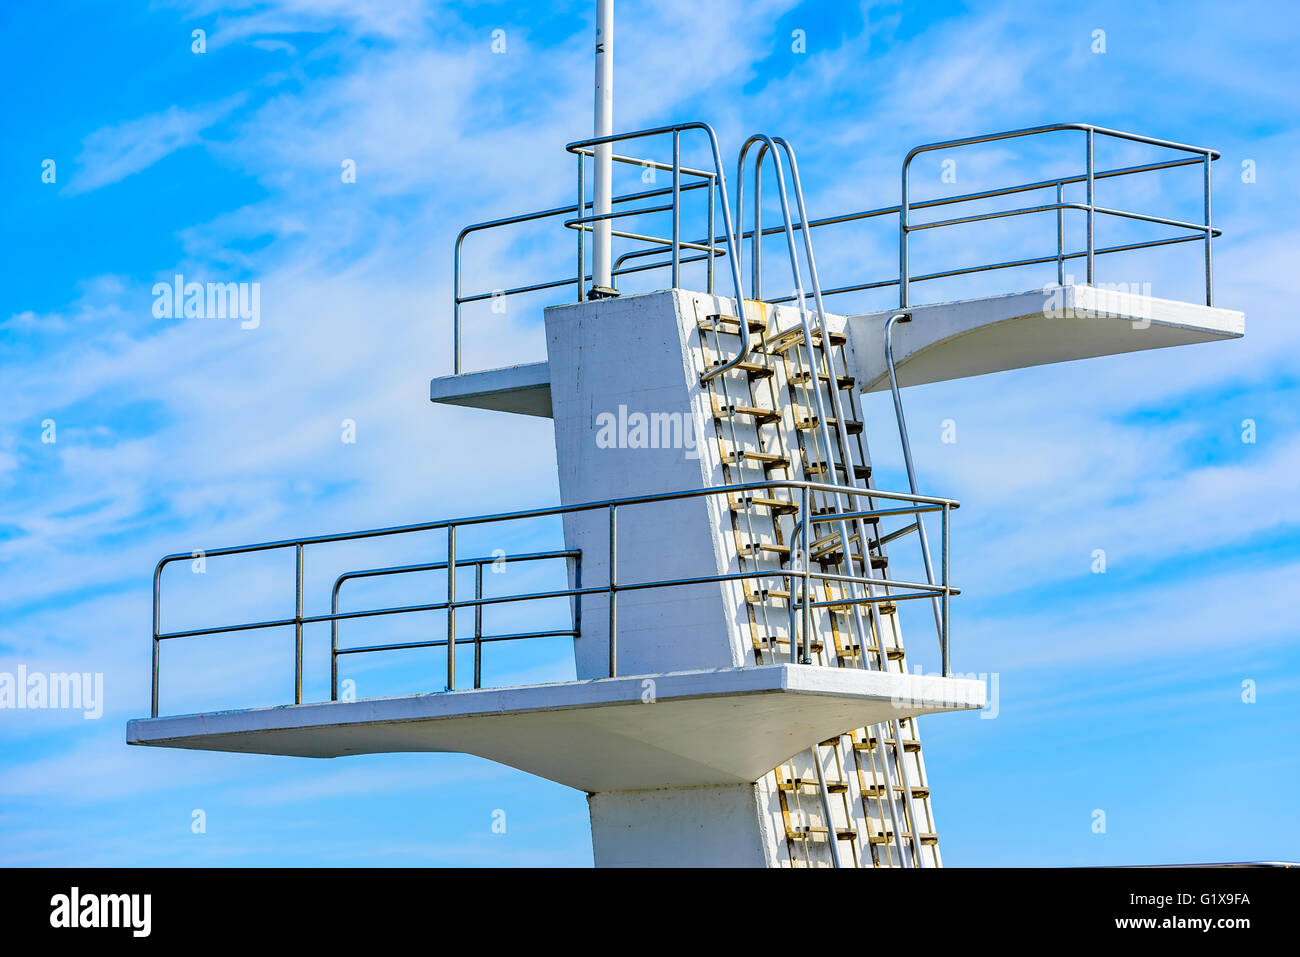 Détail d'un public blanc tour de plongée ou plateforme de plongée contre un ciel bleu. Banque D'Images